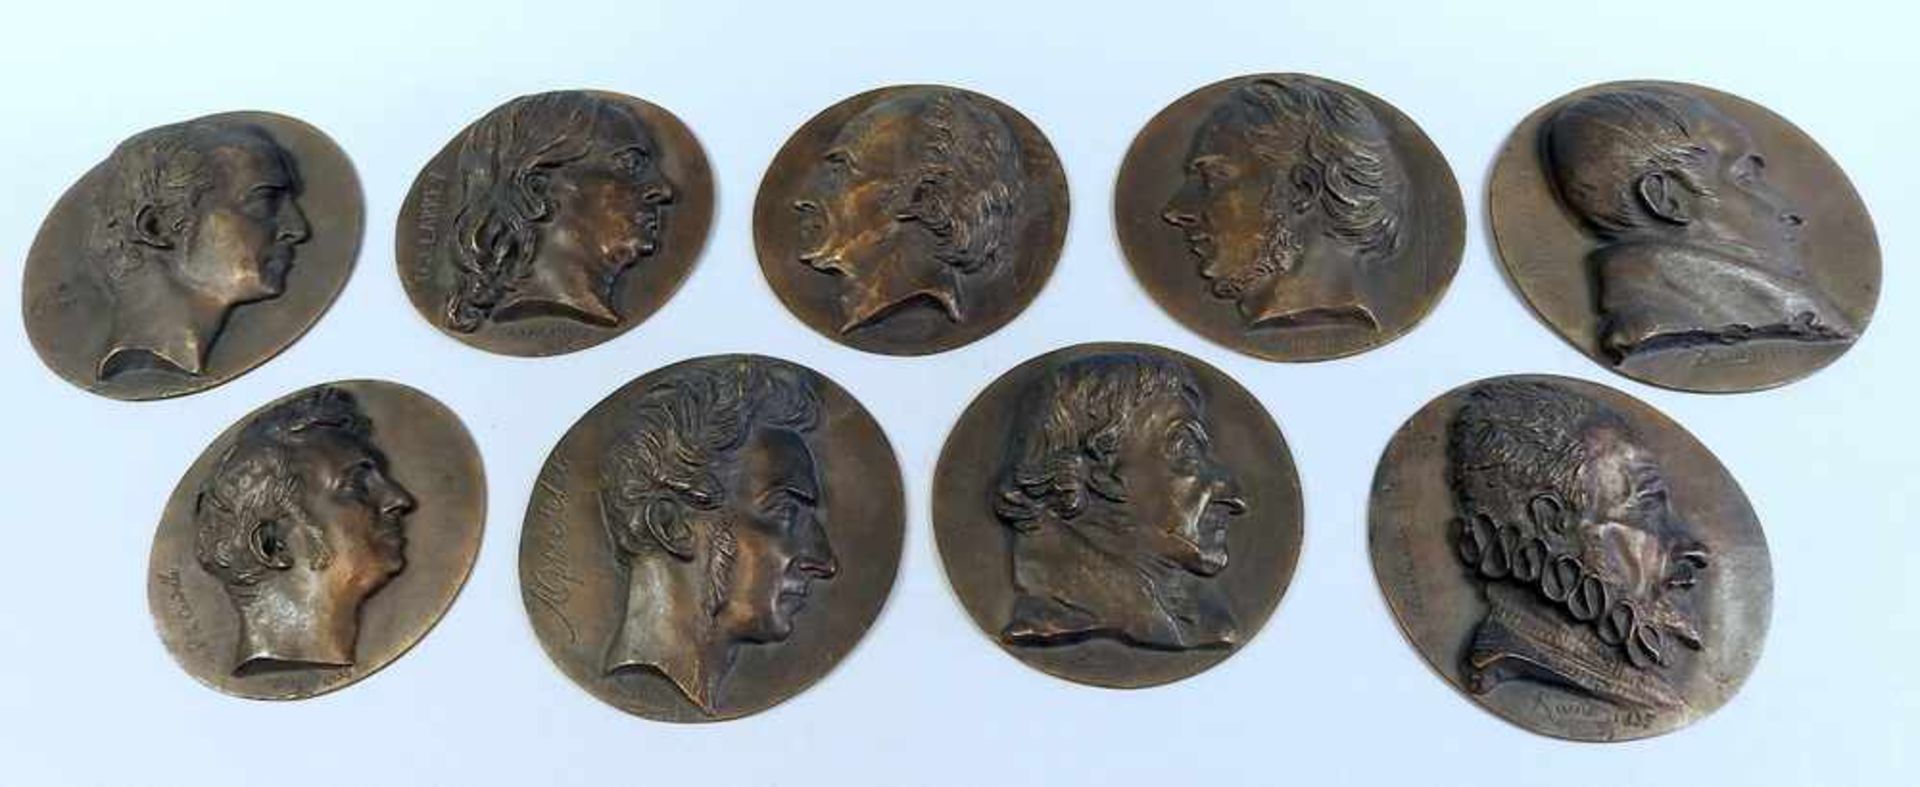 Pierre Jean David d'Angers, 1788 Angers - 1856 Paris 9 Bronzemedaillen mit Profilen von